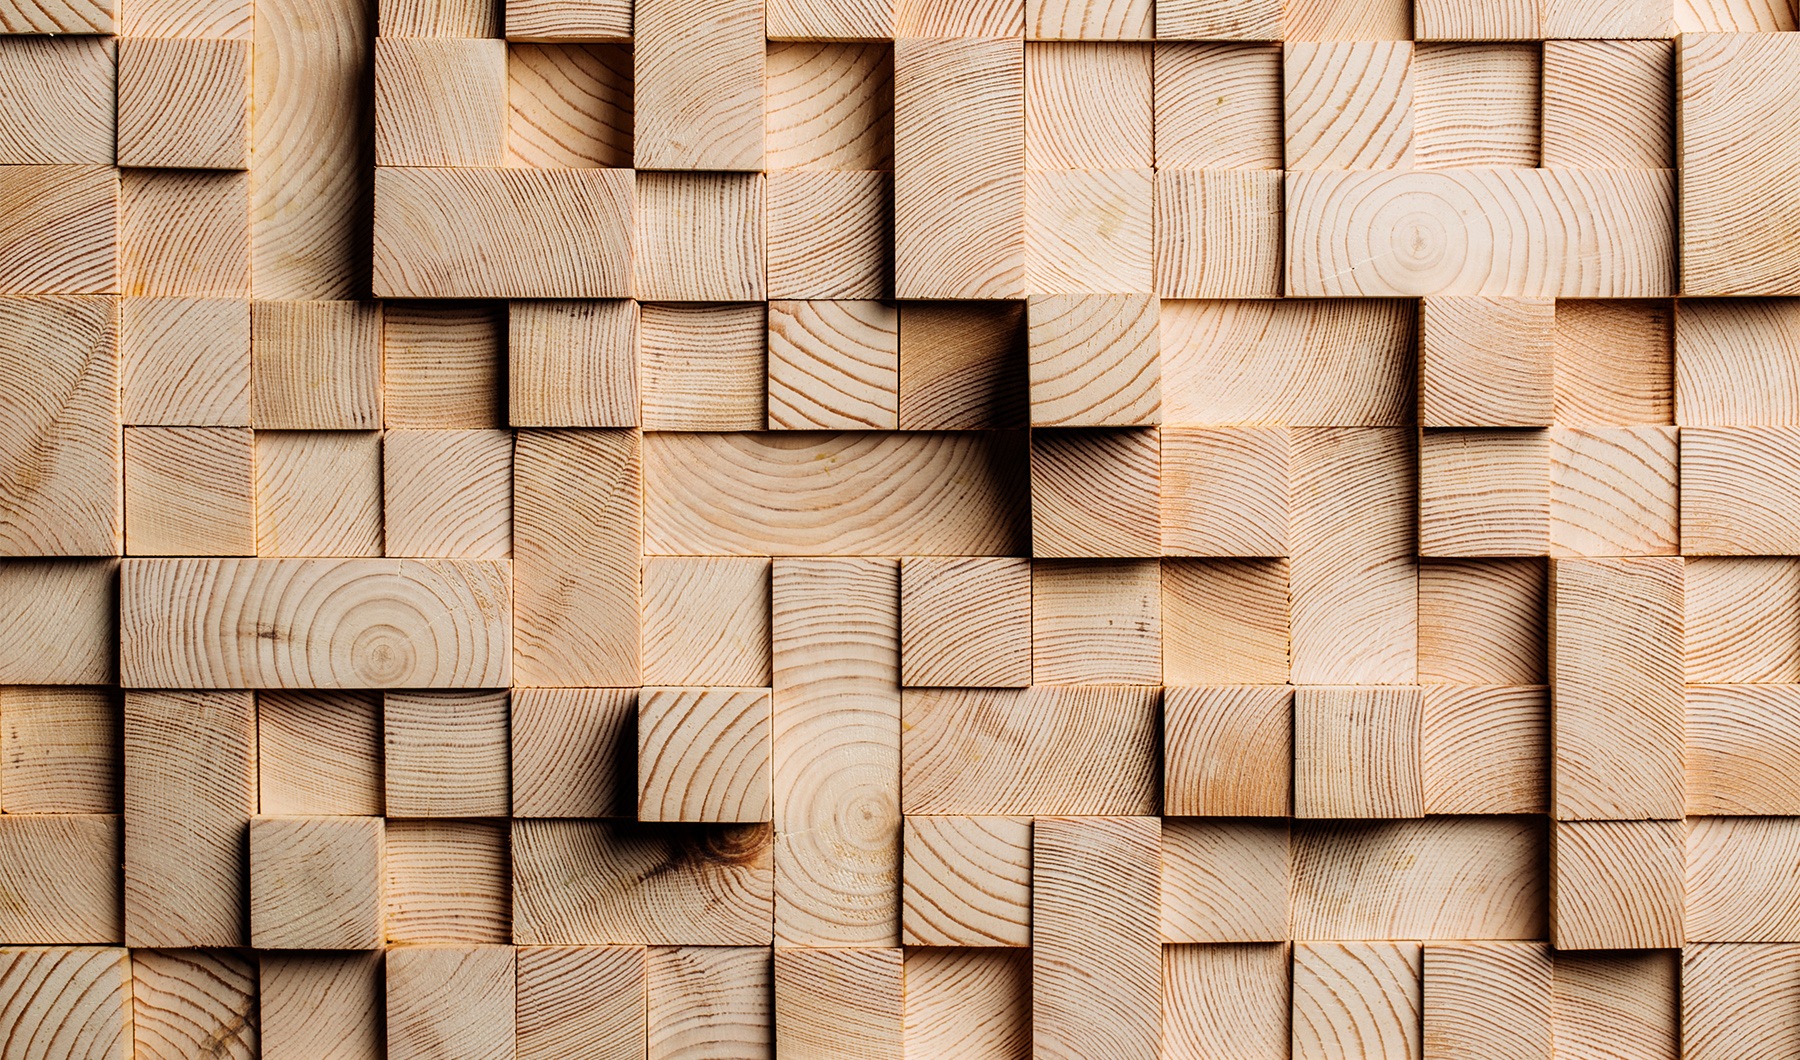 Wooden blocks put together